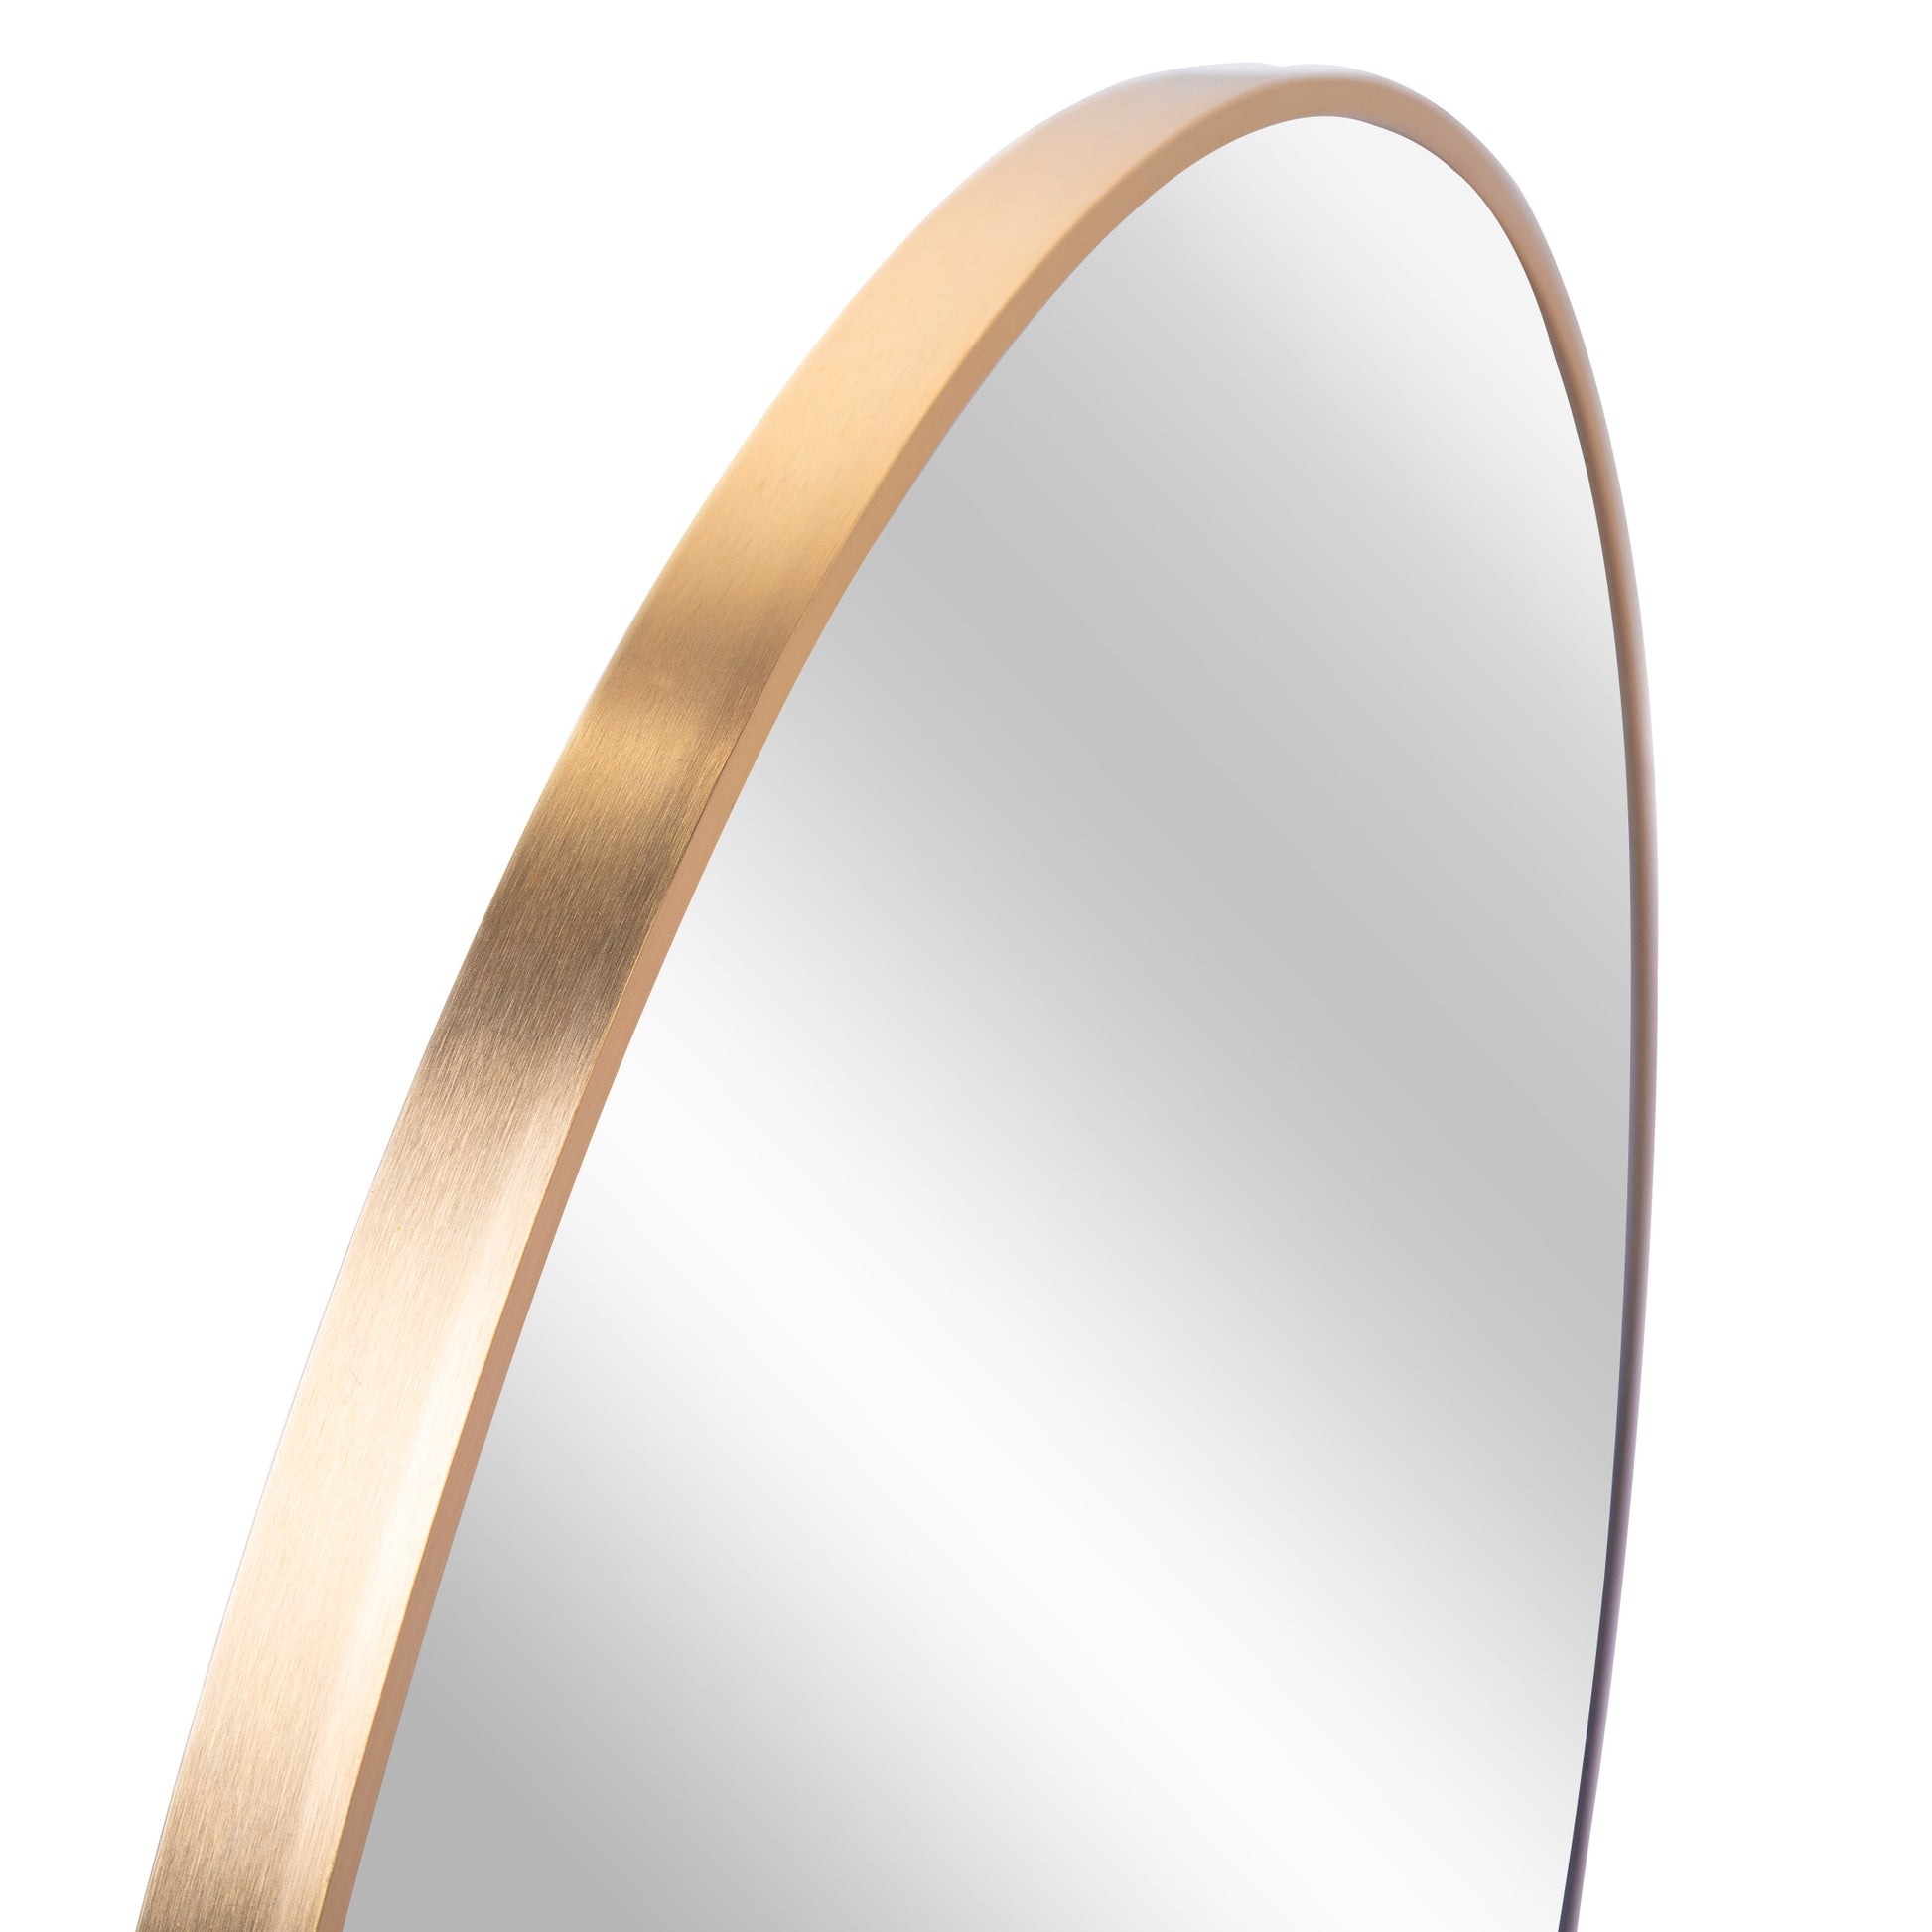 Gold 30 Inch Metal Round Bathroom Mirror - Gold